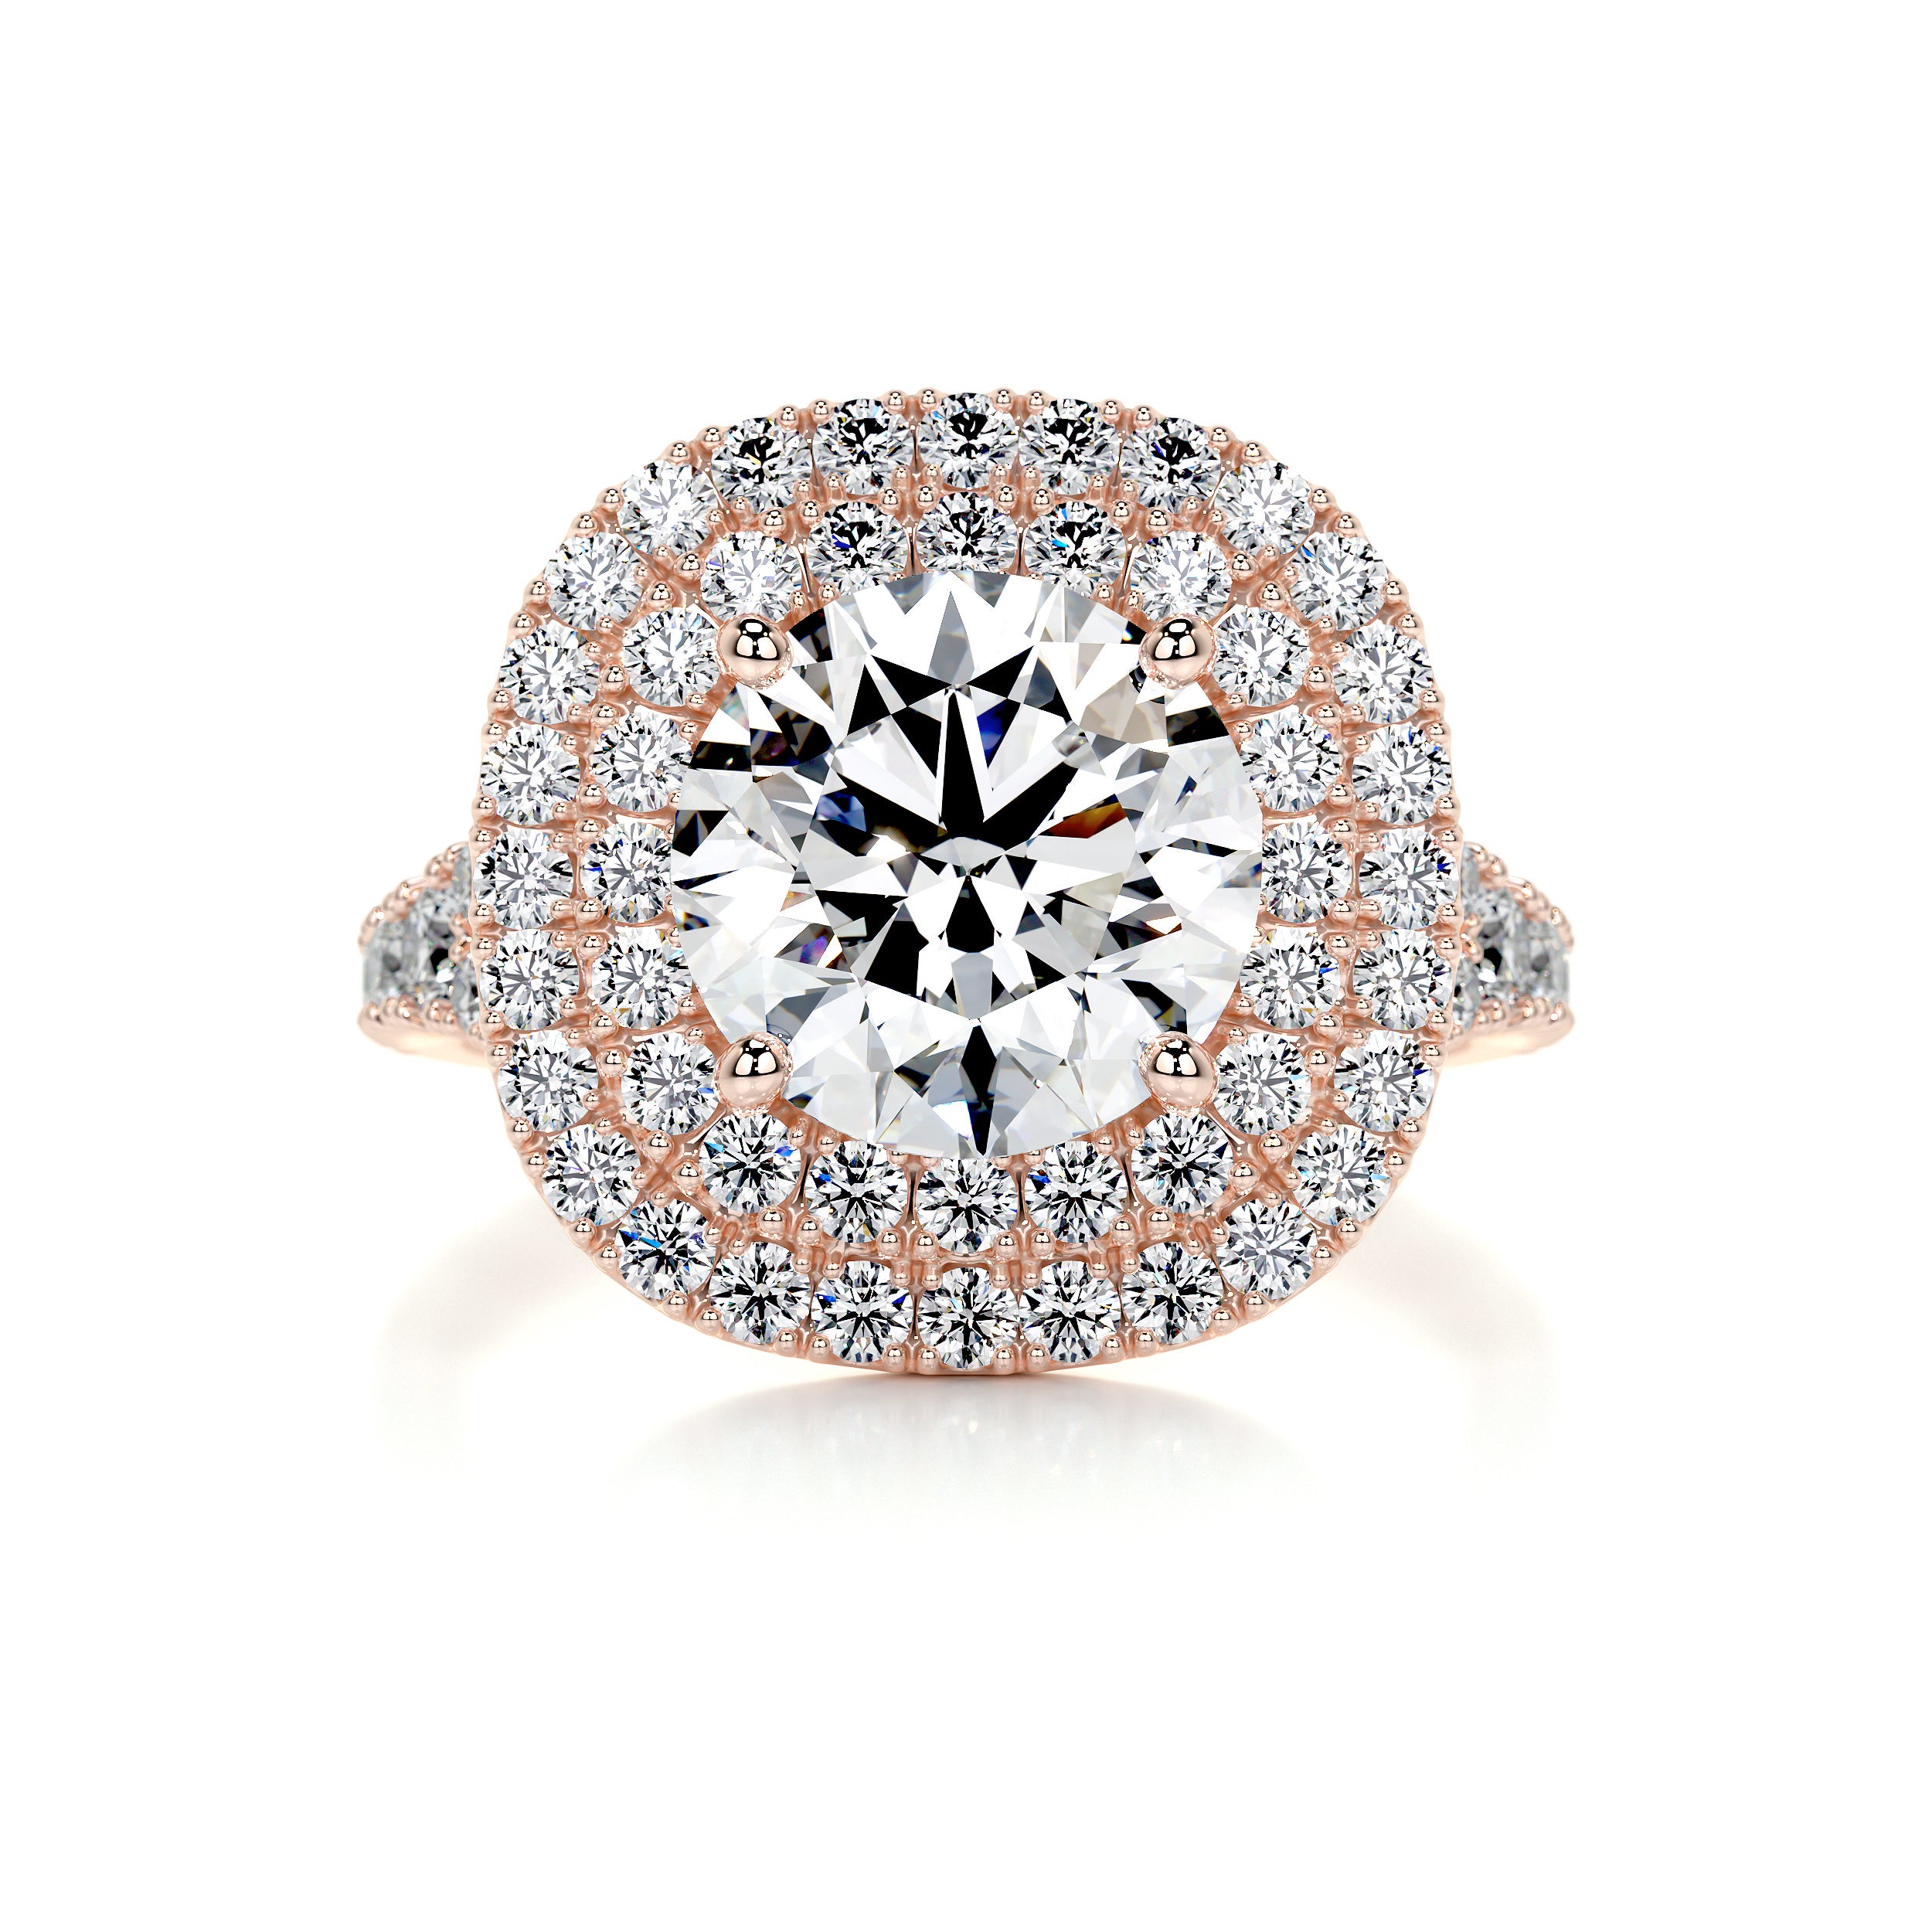 Angela Diamond Engagement Ring   (3 Carat) -14K Rose Gold